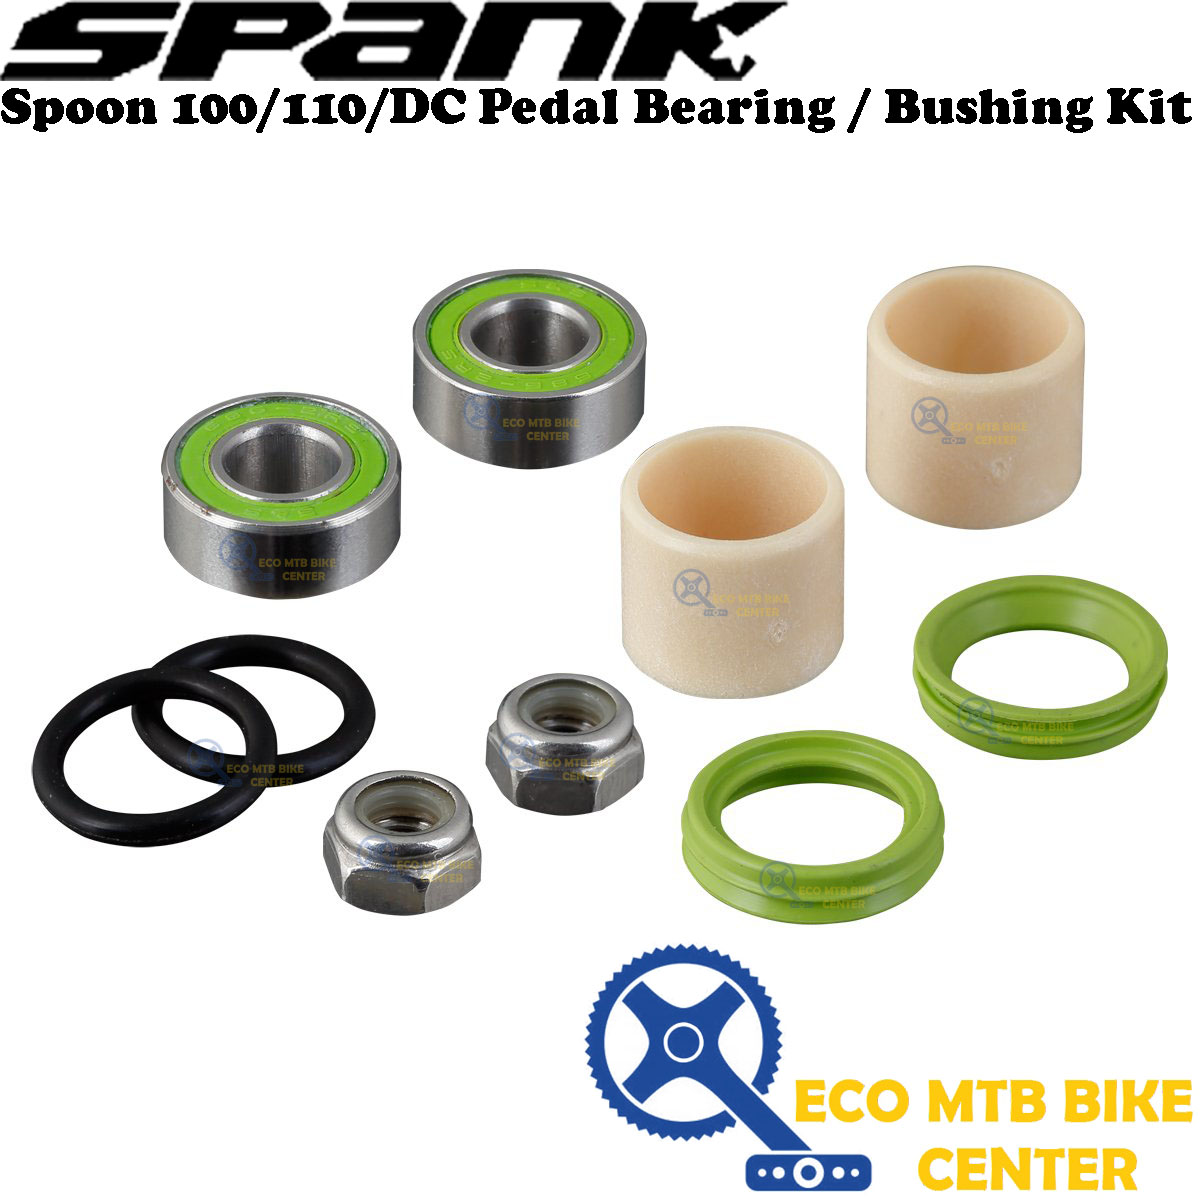 SPANK Spoon 100 / 110 / DC Pedal Bearing / Bushing Kit